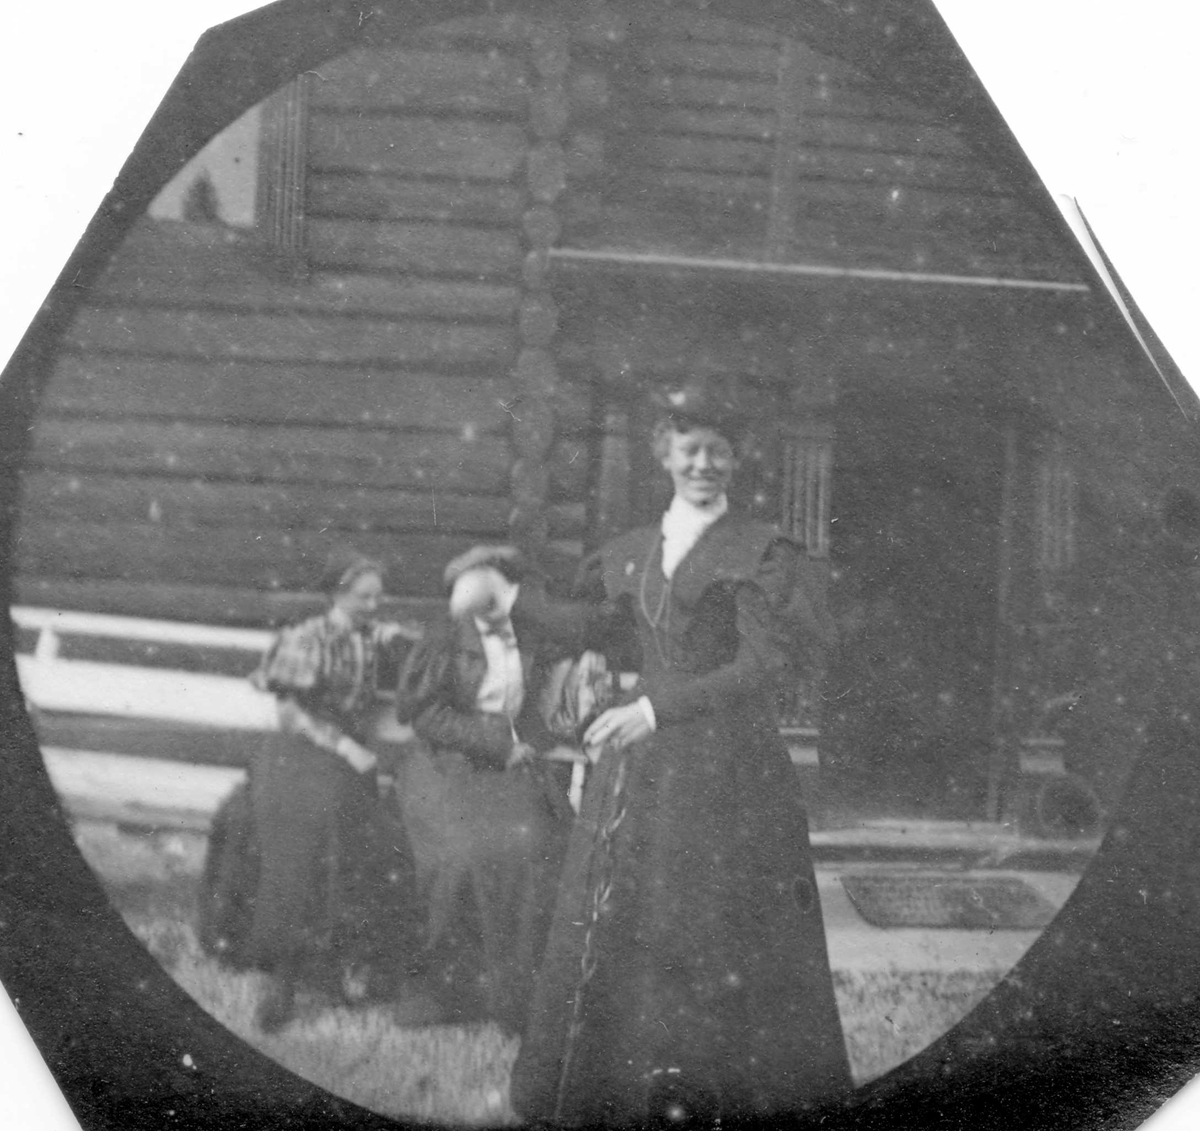 Golå, Sør-Fron, Oppland. Frk Alnæs står foran tømmerhus. To damer sitter på krakk.